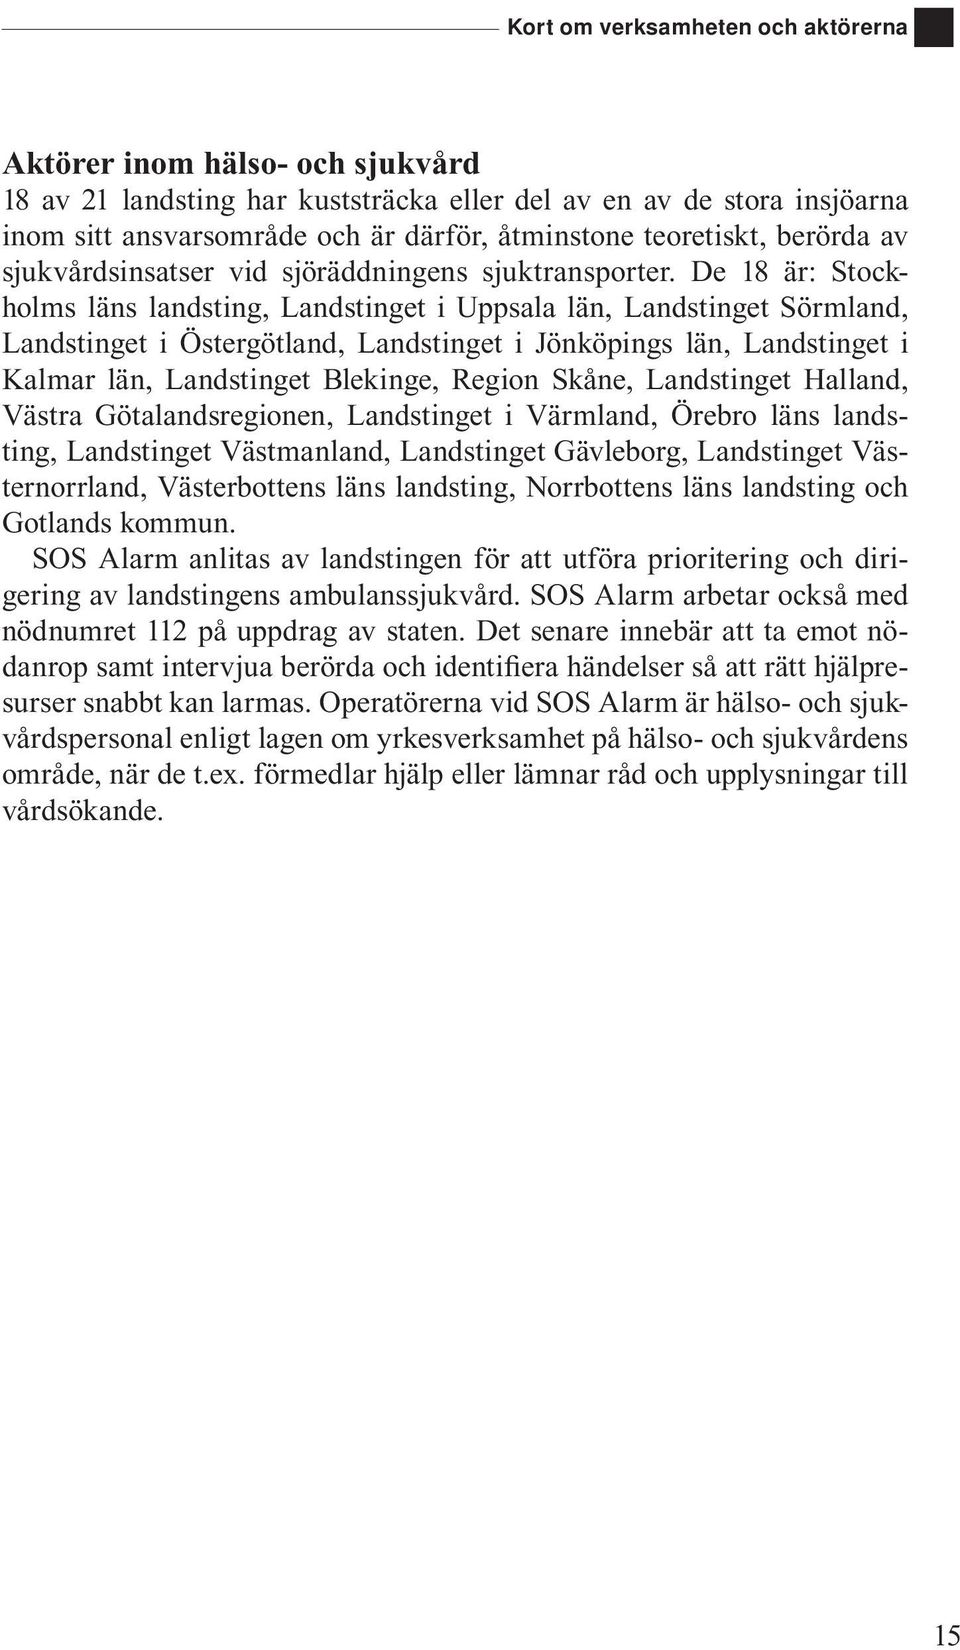 De 18 är: Stockholms läns landsting, Landstinget i Uppsala län, Landstinget Sörmland, Landstinget i Östergötland, Landstinget i Jönköpings län, Landstinget i Kalmar län, Landstinget Blekinge, Region